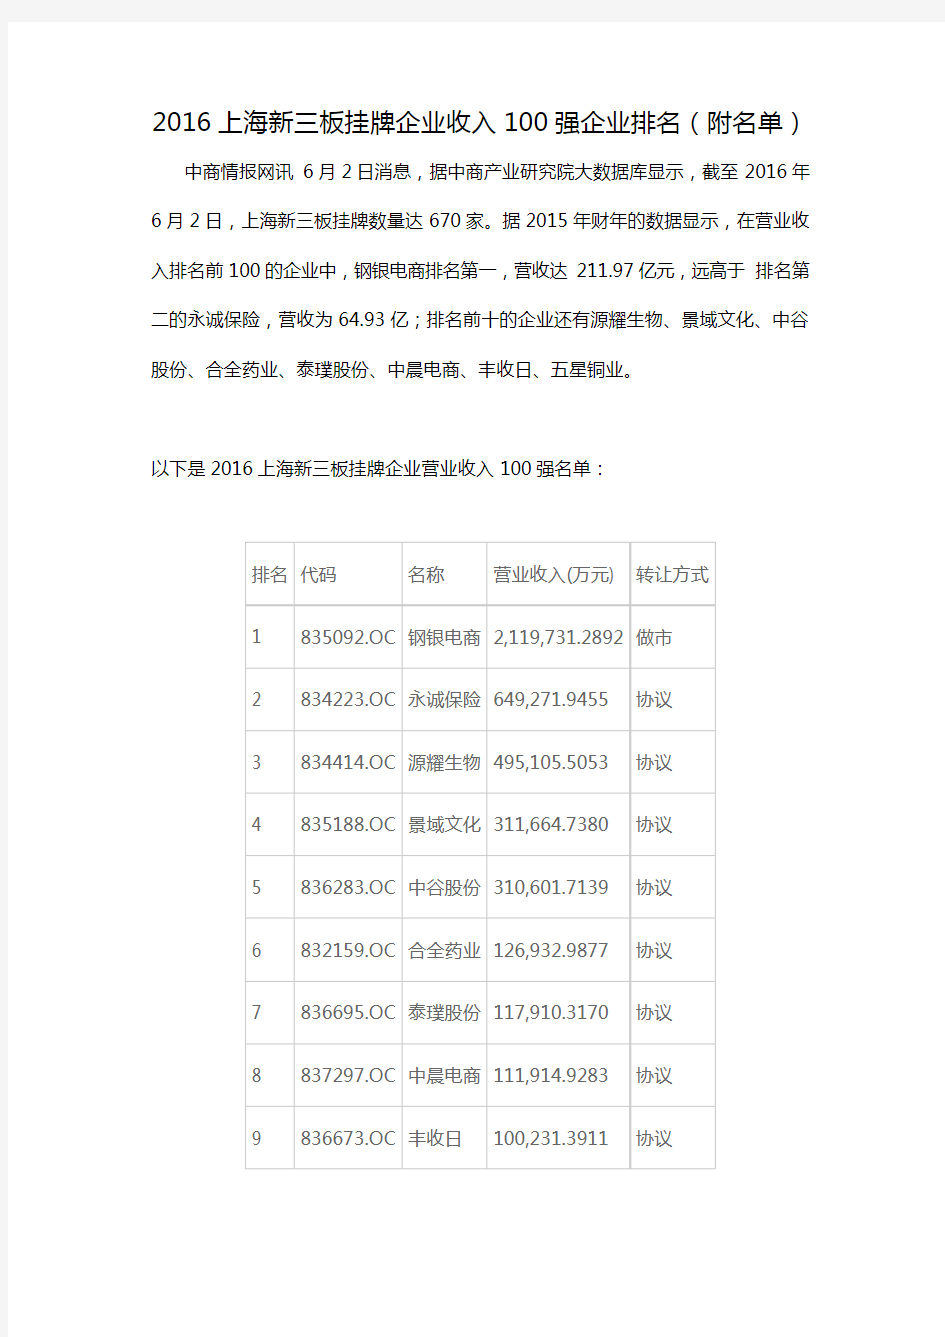 (完整word版)2016上海新三板挂牌企业收入100强企业排名(附名单)